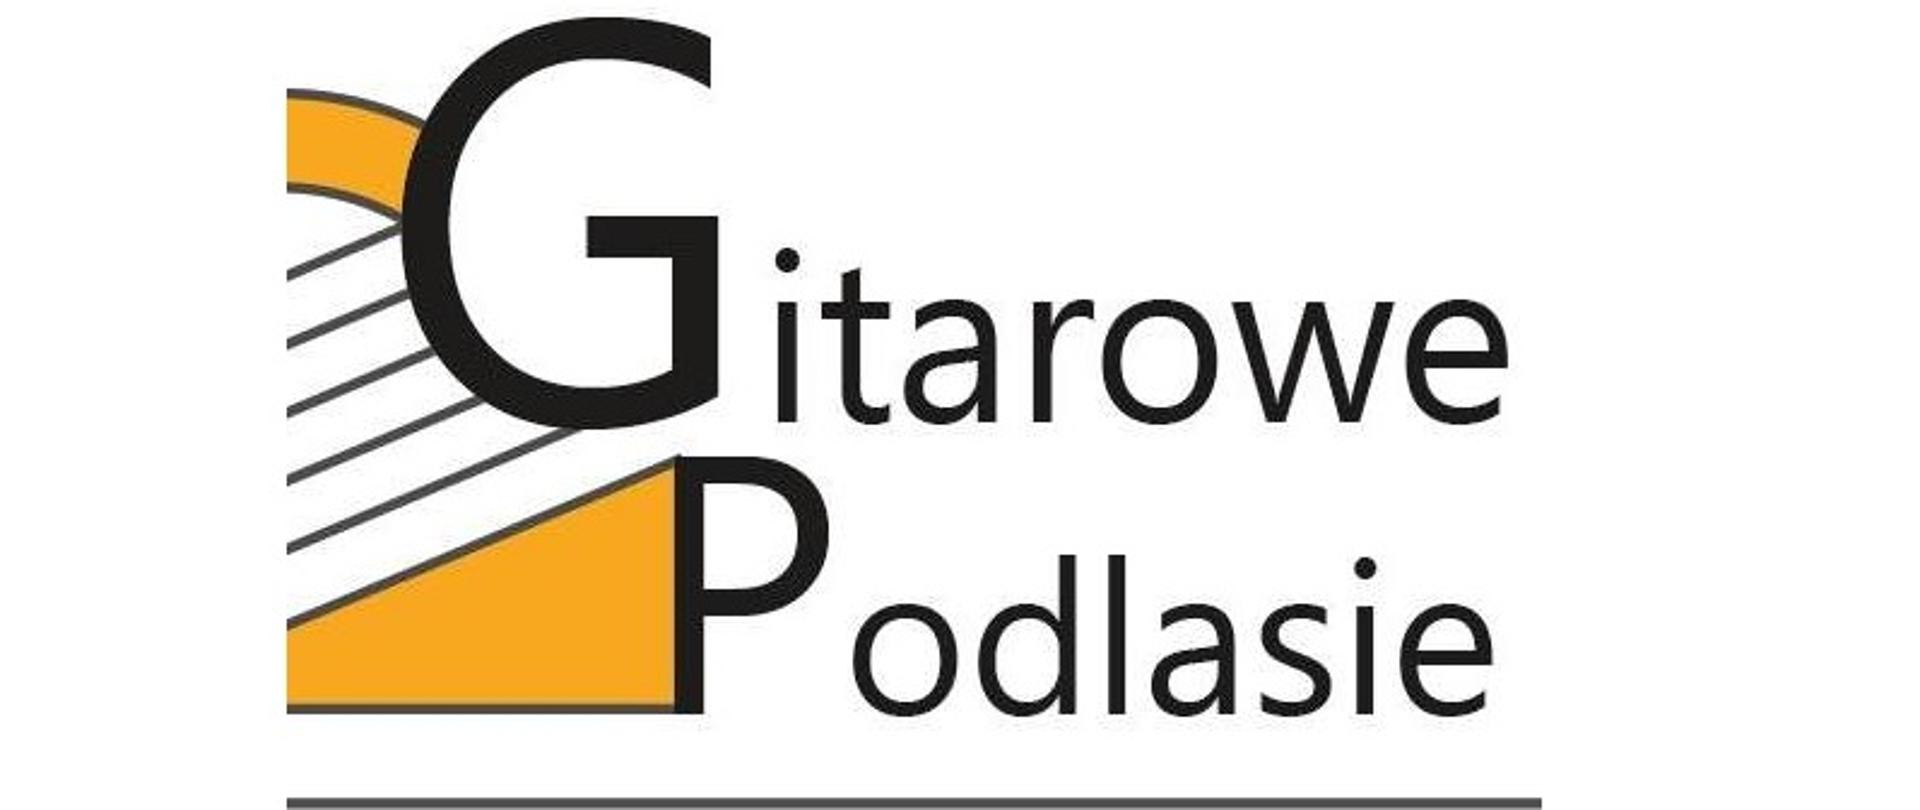 logotyp festiwalu Gitarowe Podlasie pomarańczowo czarny z elementami gitary i sześciu strun